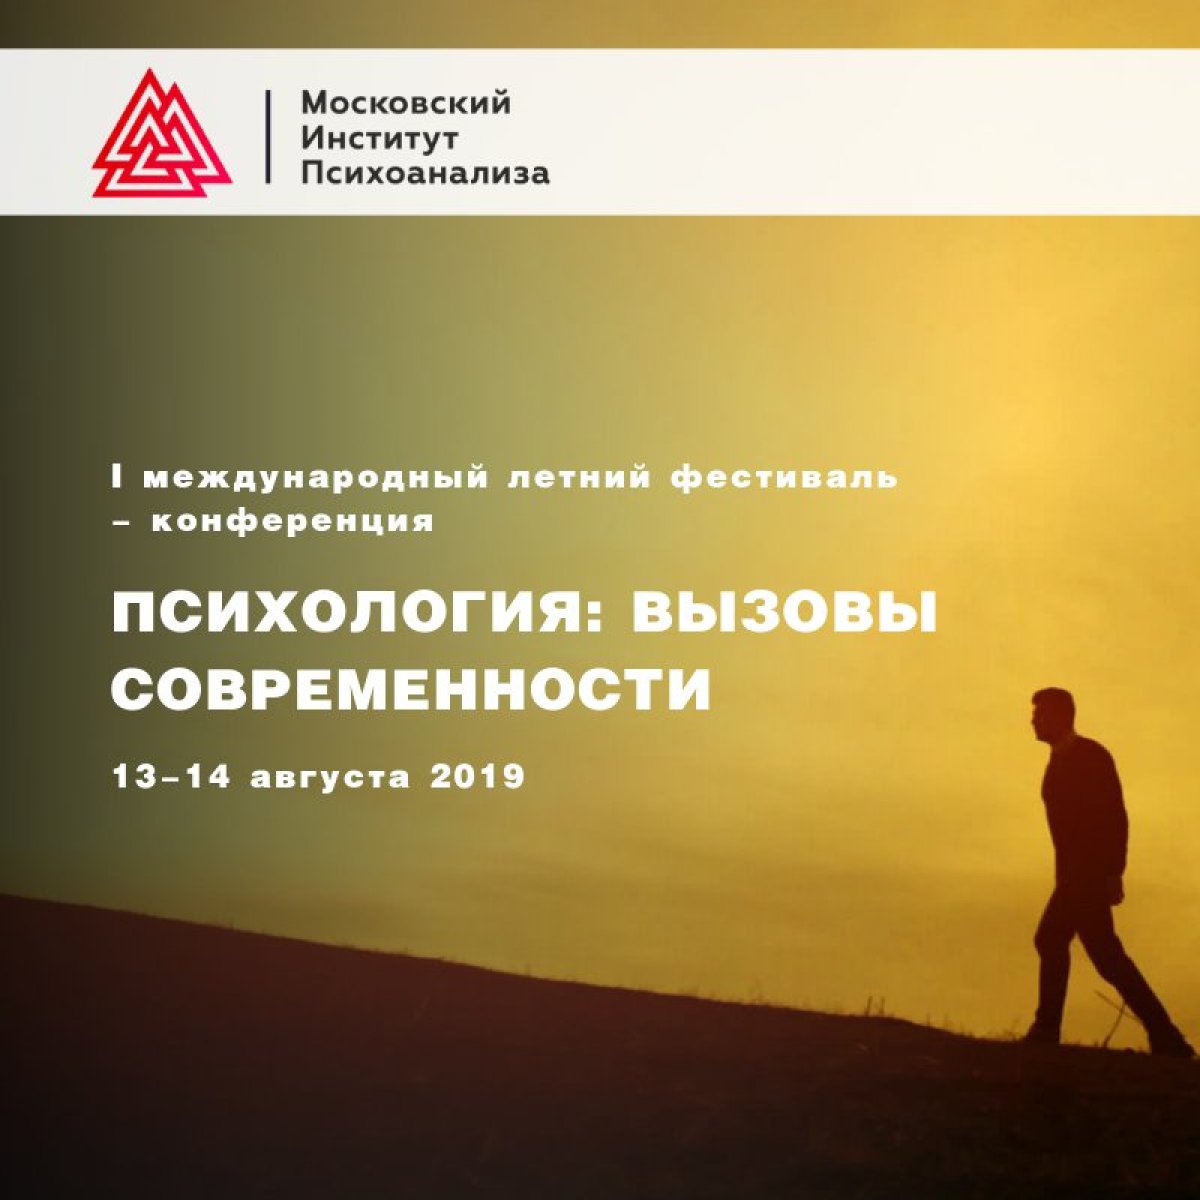 13 и 14 августа 2019 года в Москве состоится Международный летний фестиваль-конференция «Психология: вызовы современности». Приглашаем!